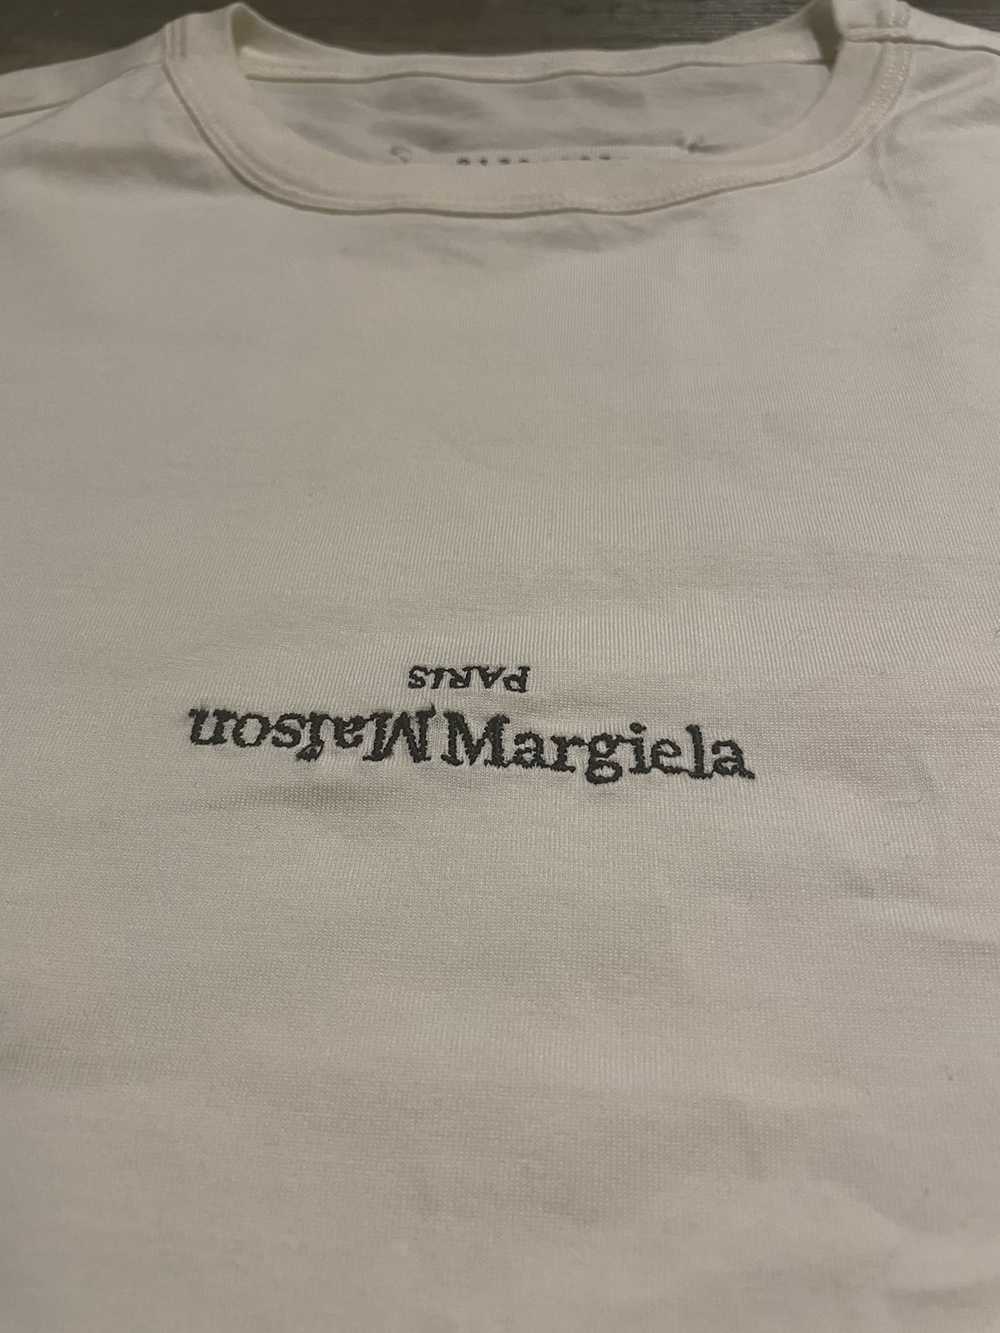 Maison Margiela Maison Margiela White Cotton T-Sh… - image 2